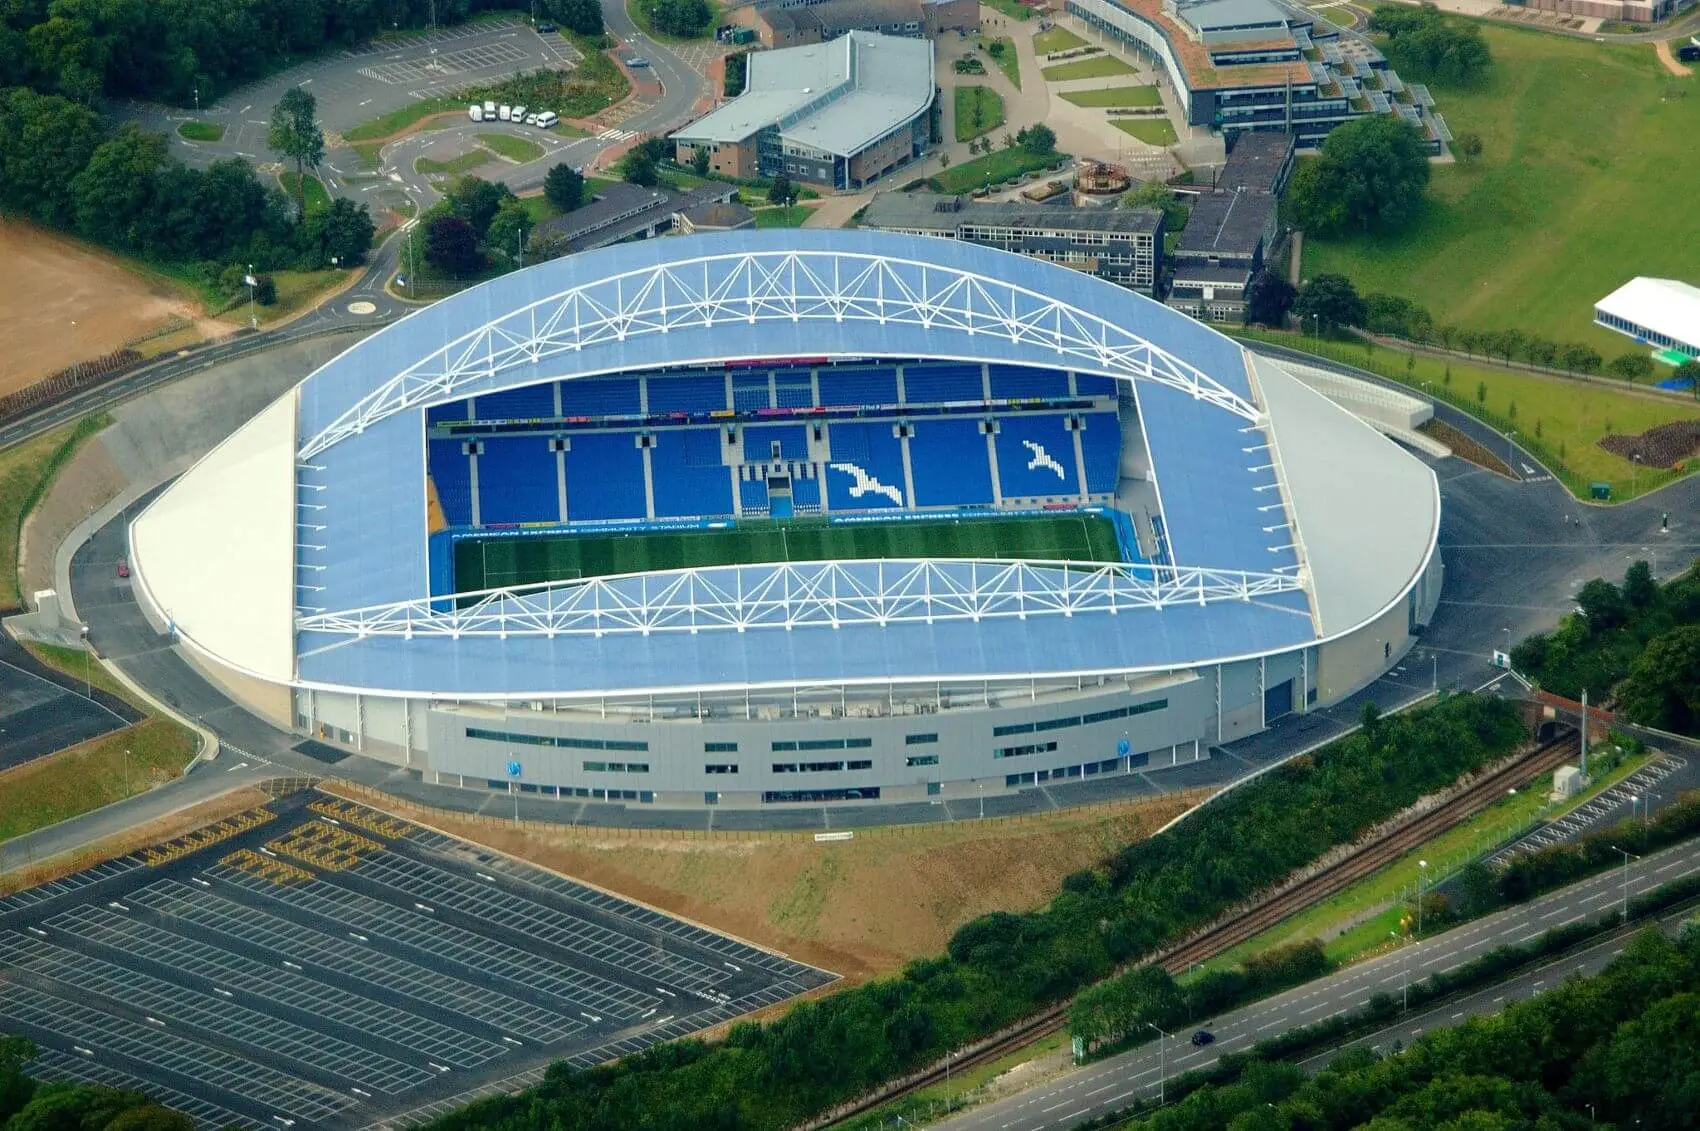 Sân vận động Falmer - Sân nhà của câu lạc bộ bóng đá Brighton & Hove Albion